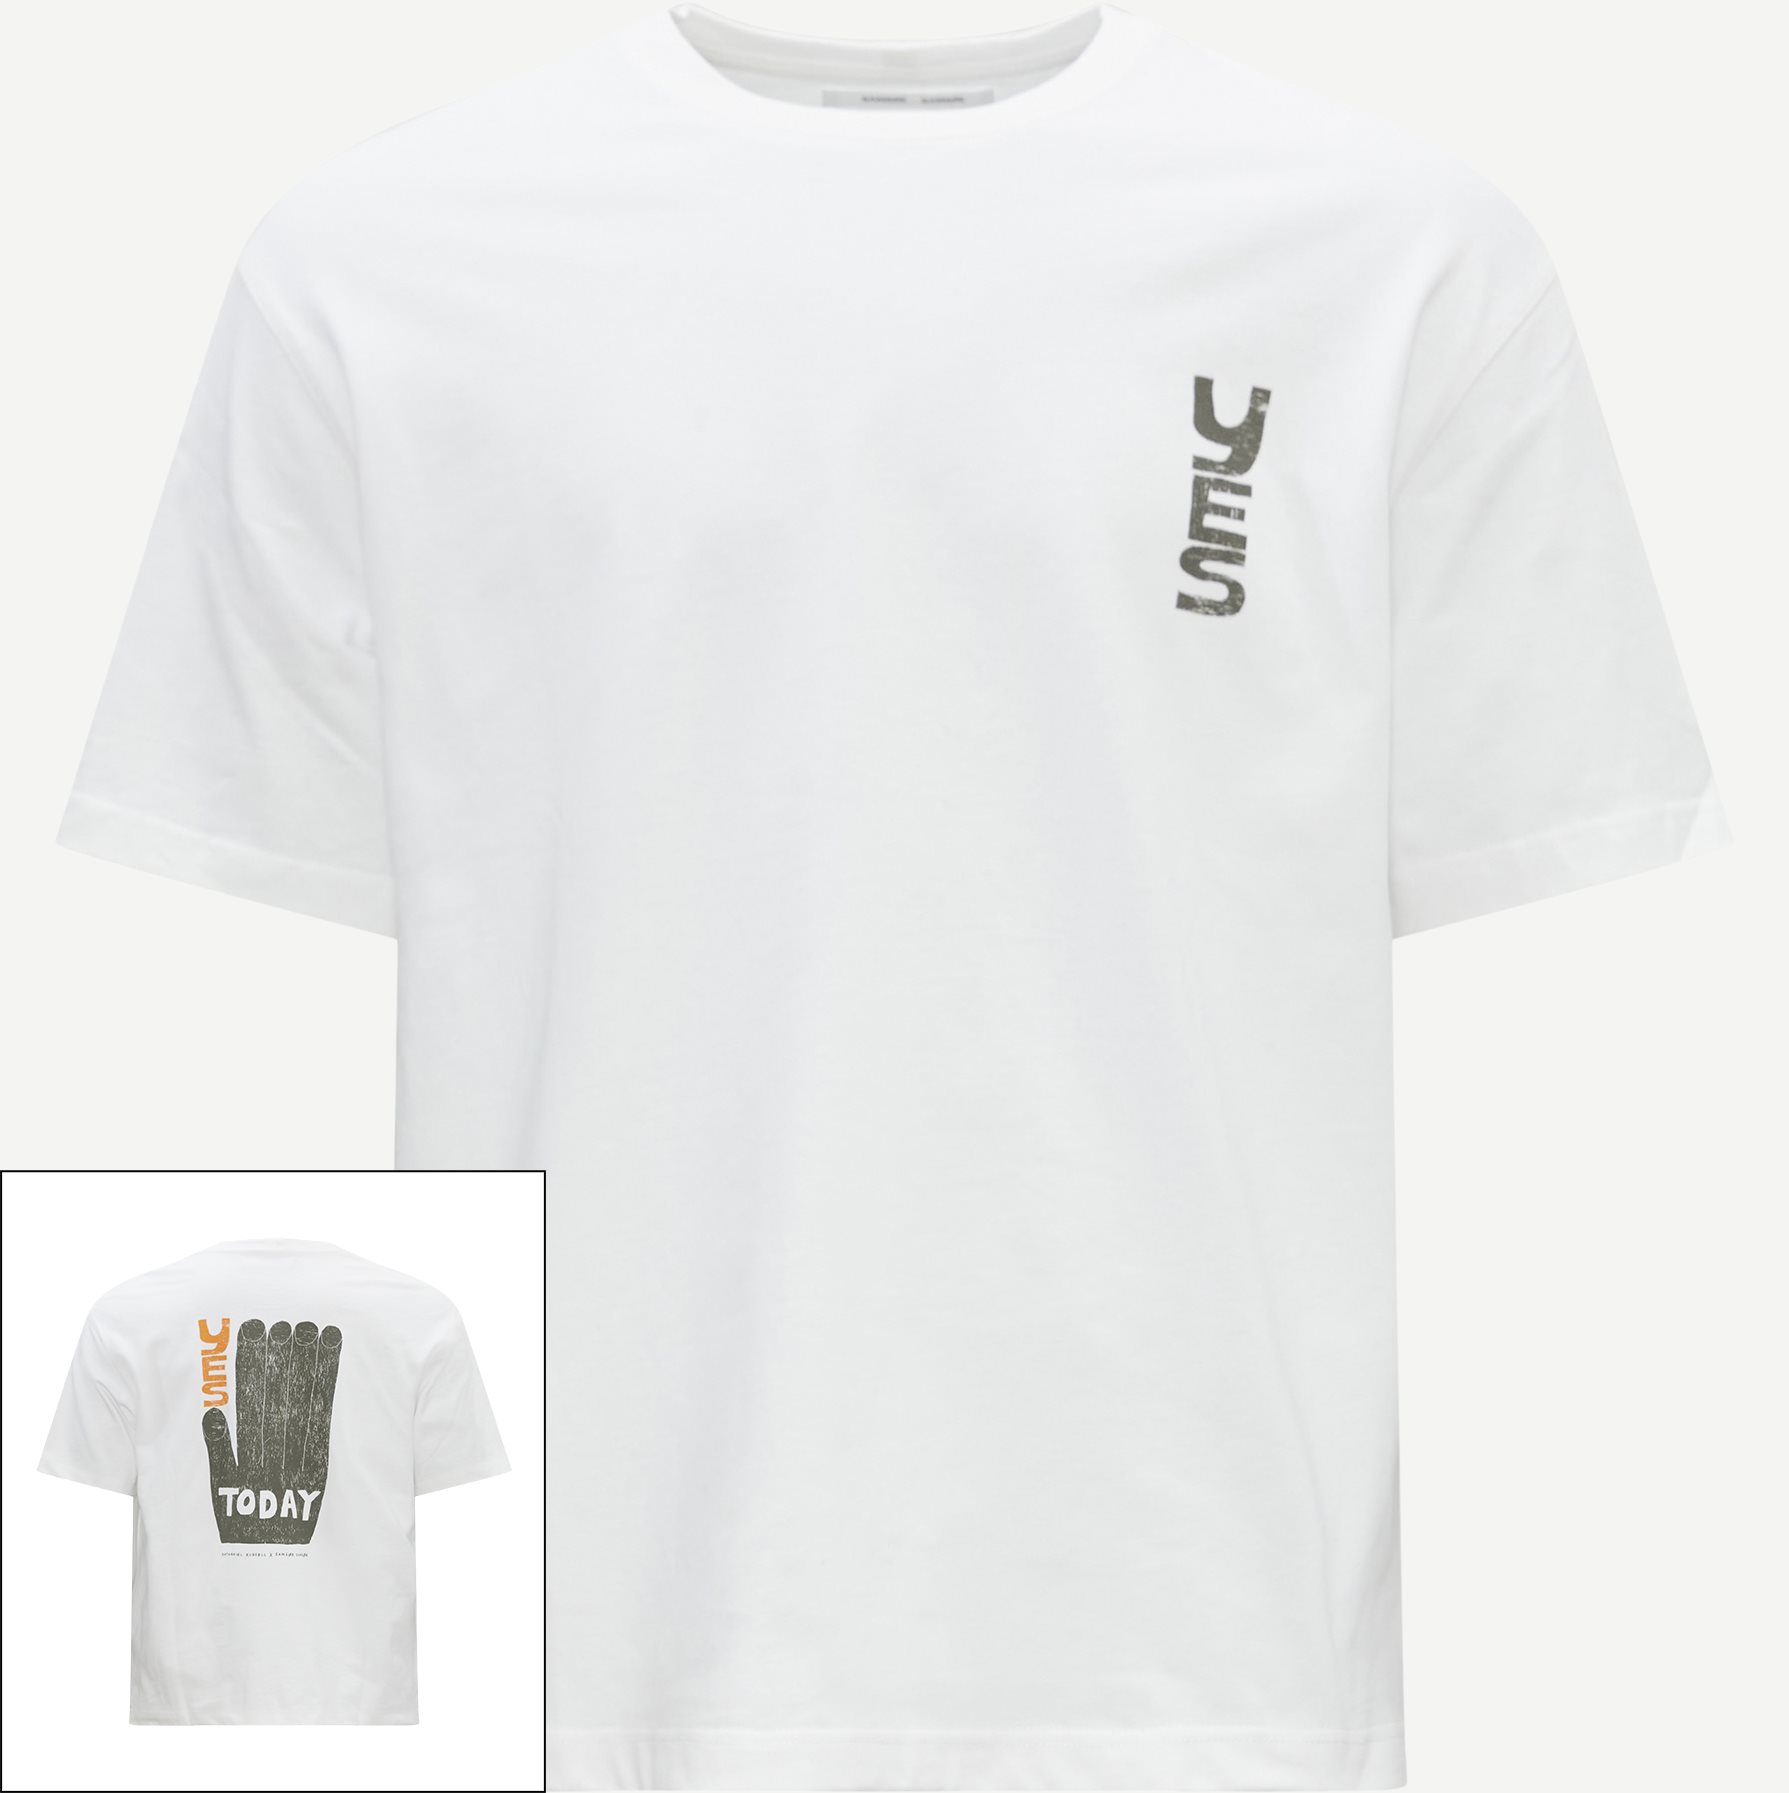 Samsøe Samsøe T-shirts NATHANIEL T-SHIRT 11725 Hvid